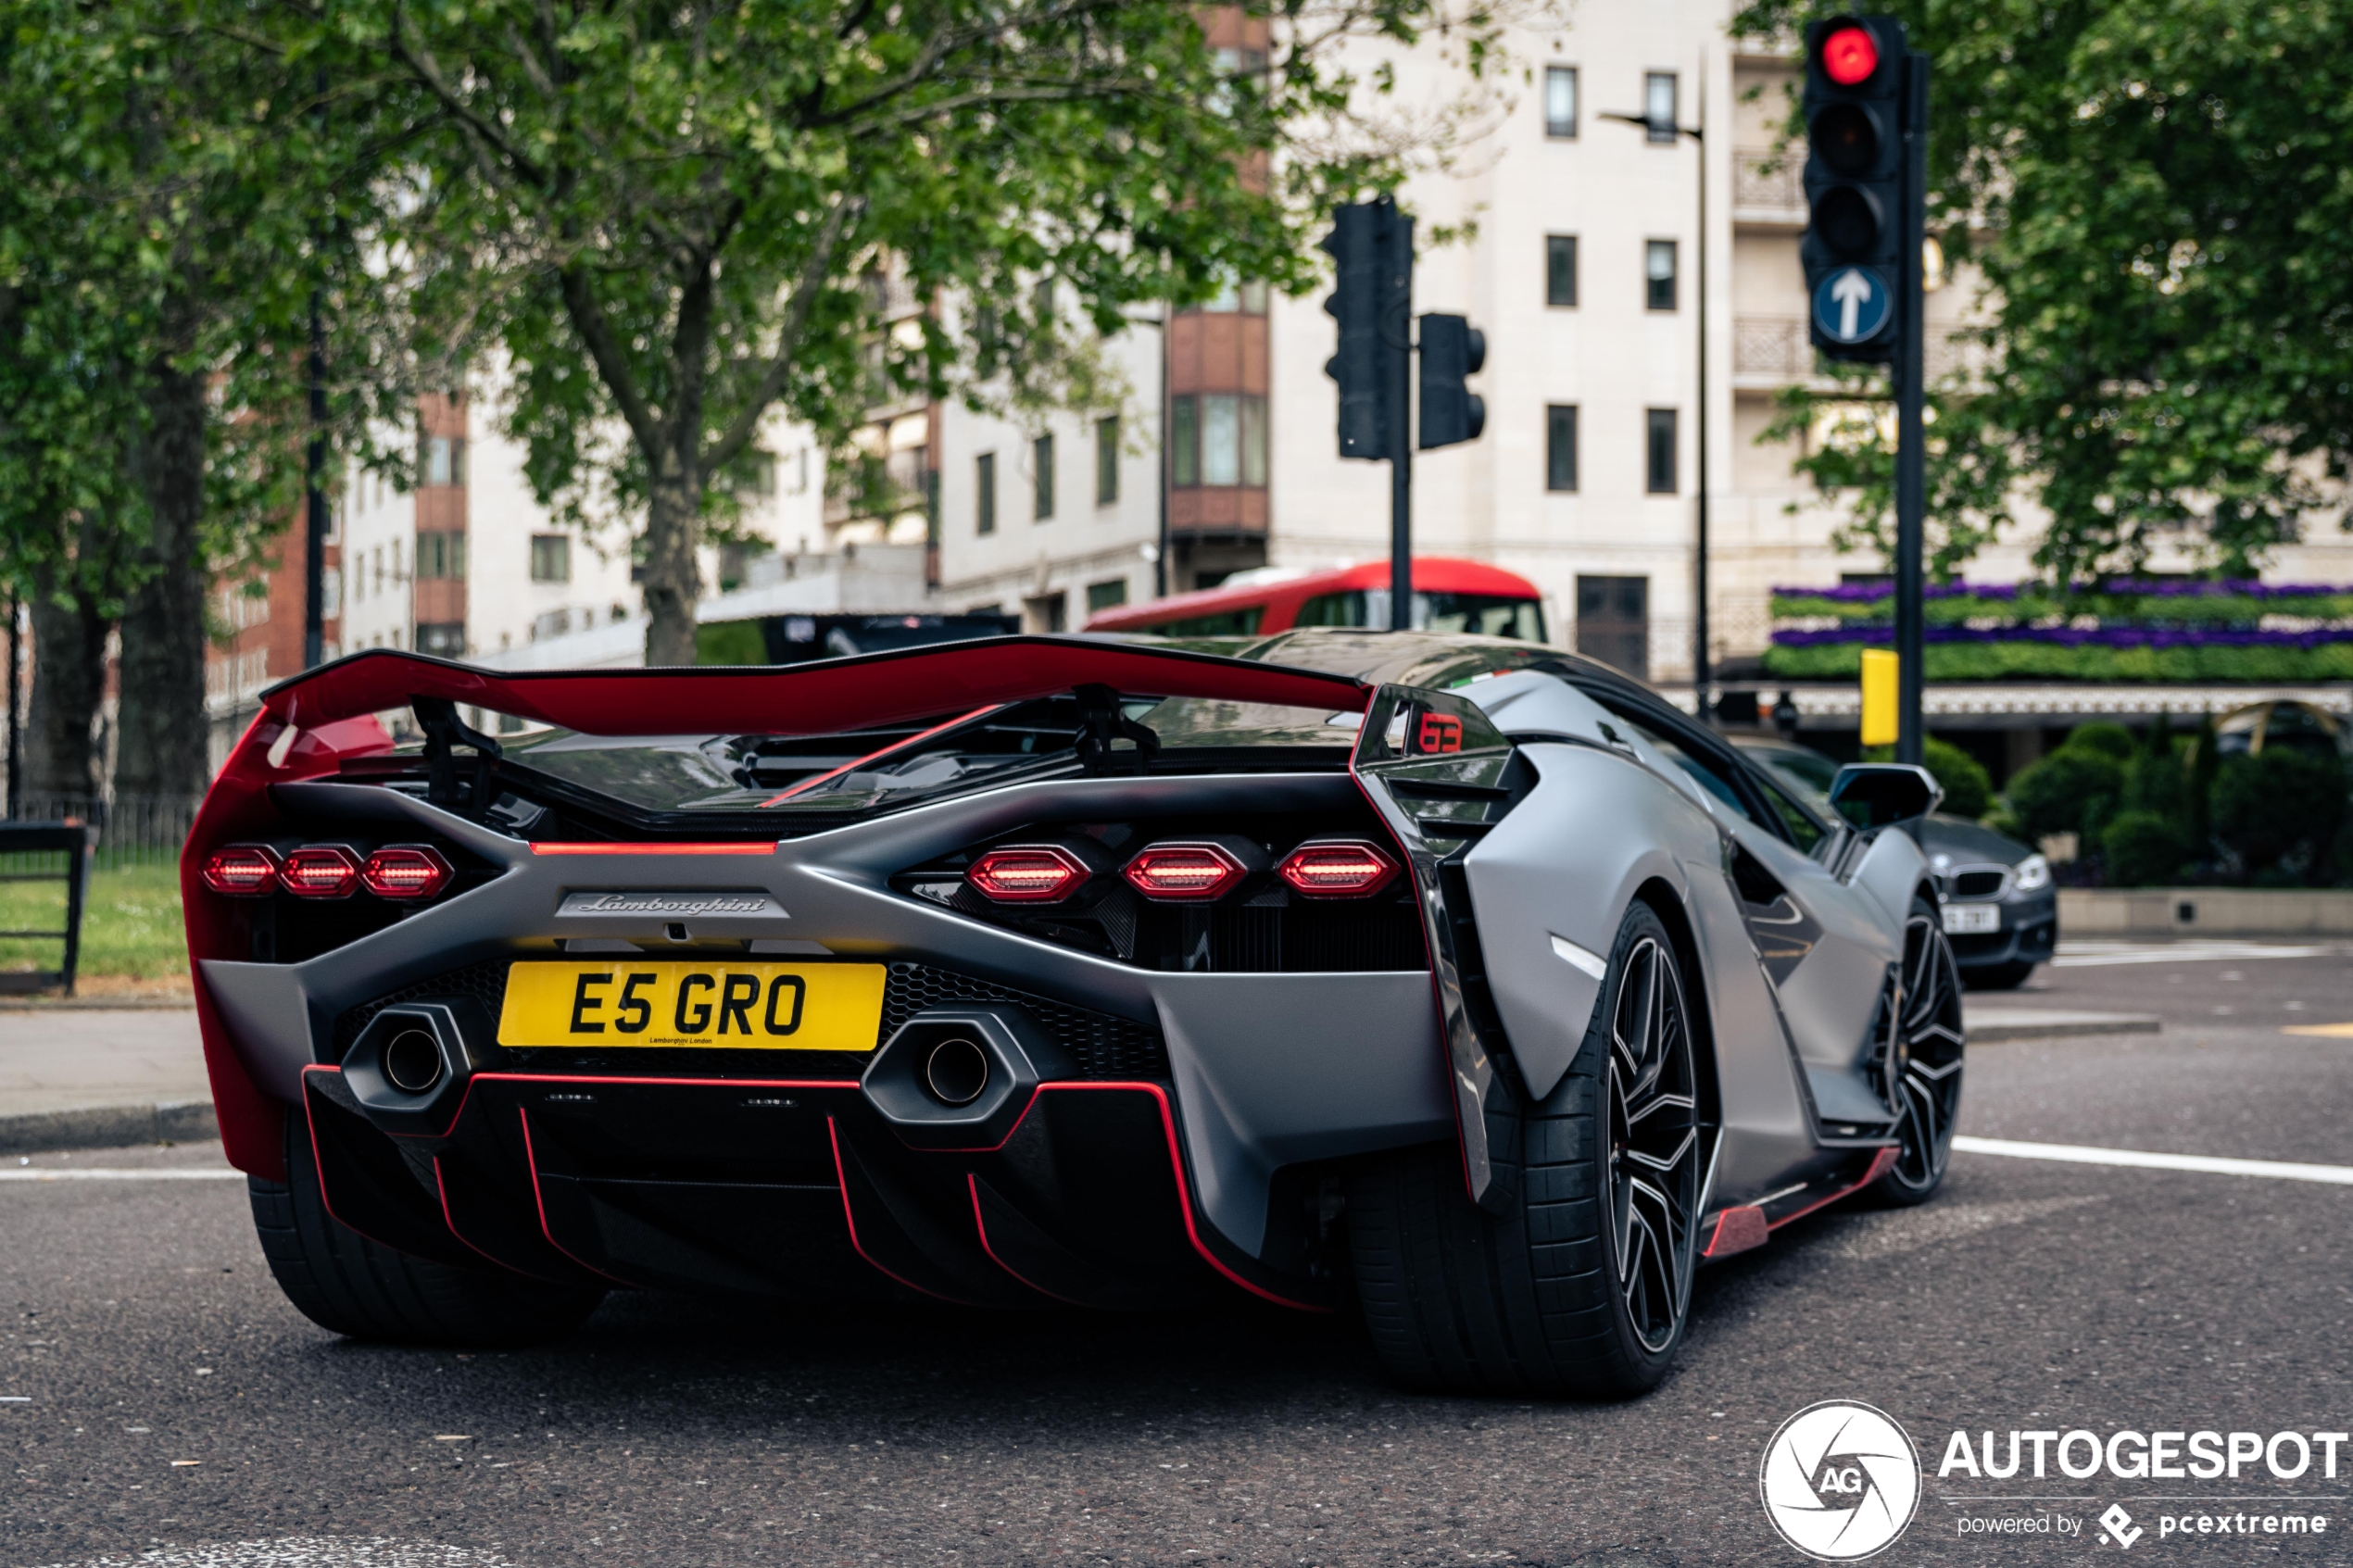 Topspot: Lamborghini Sián FKP 37 surprises London